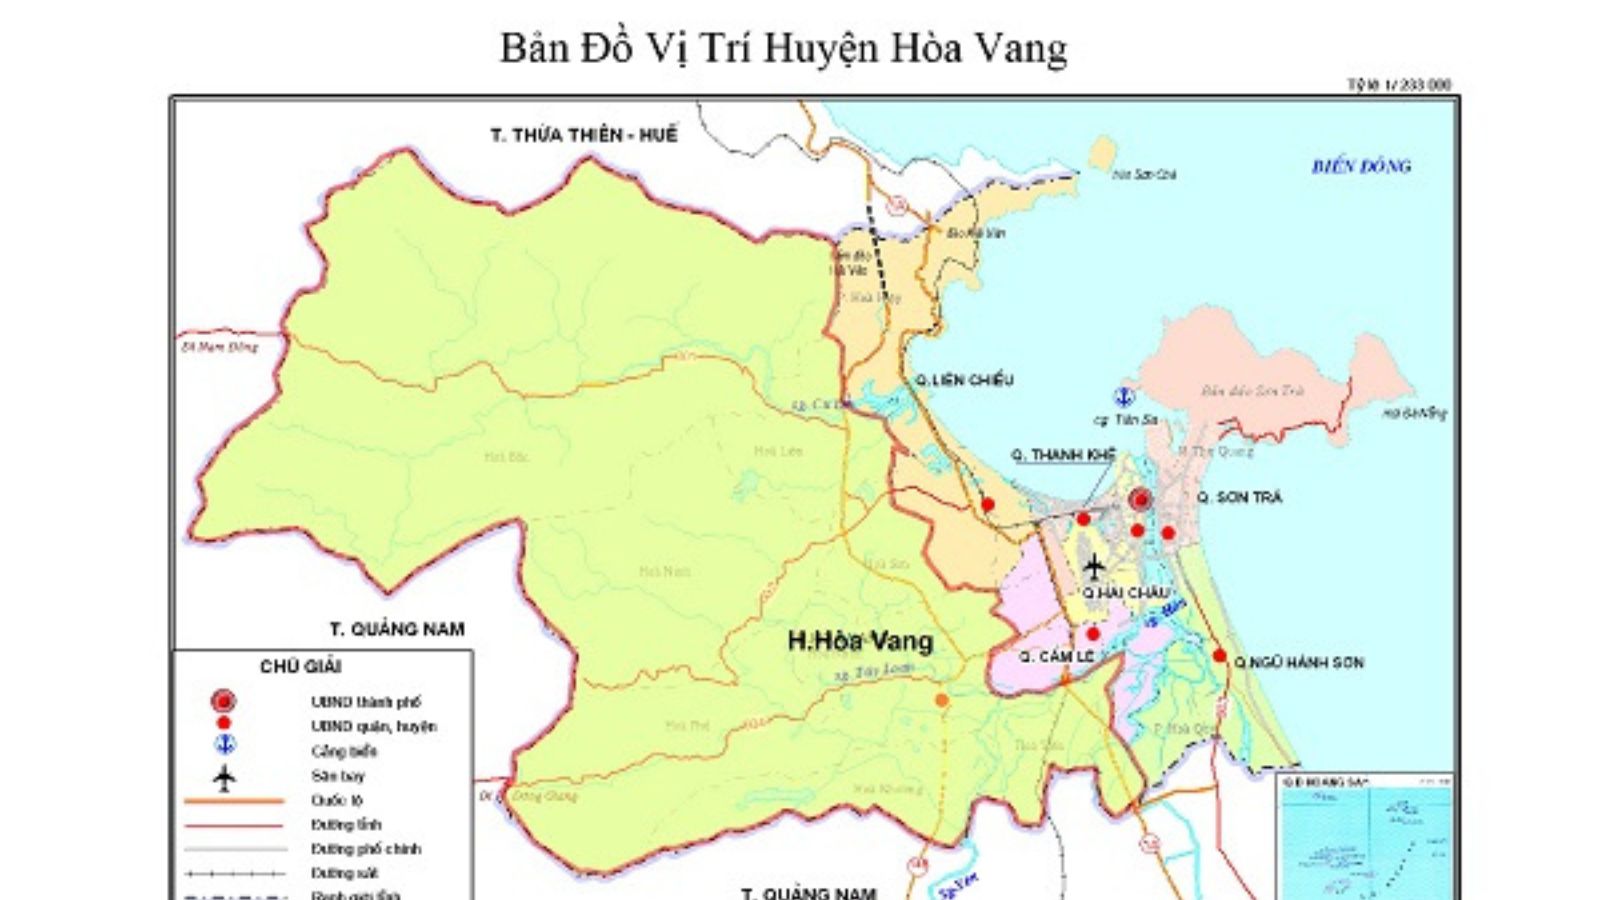 Đà Nẵng có bao nhiêu quận